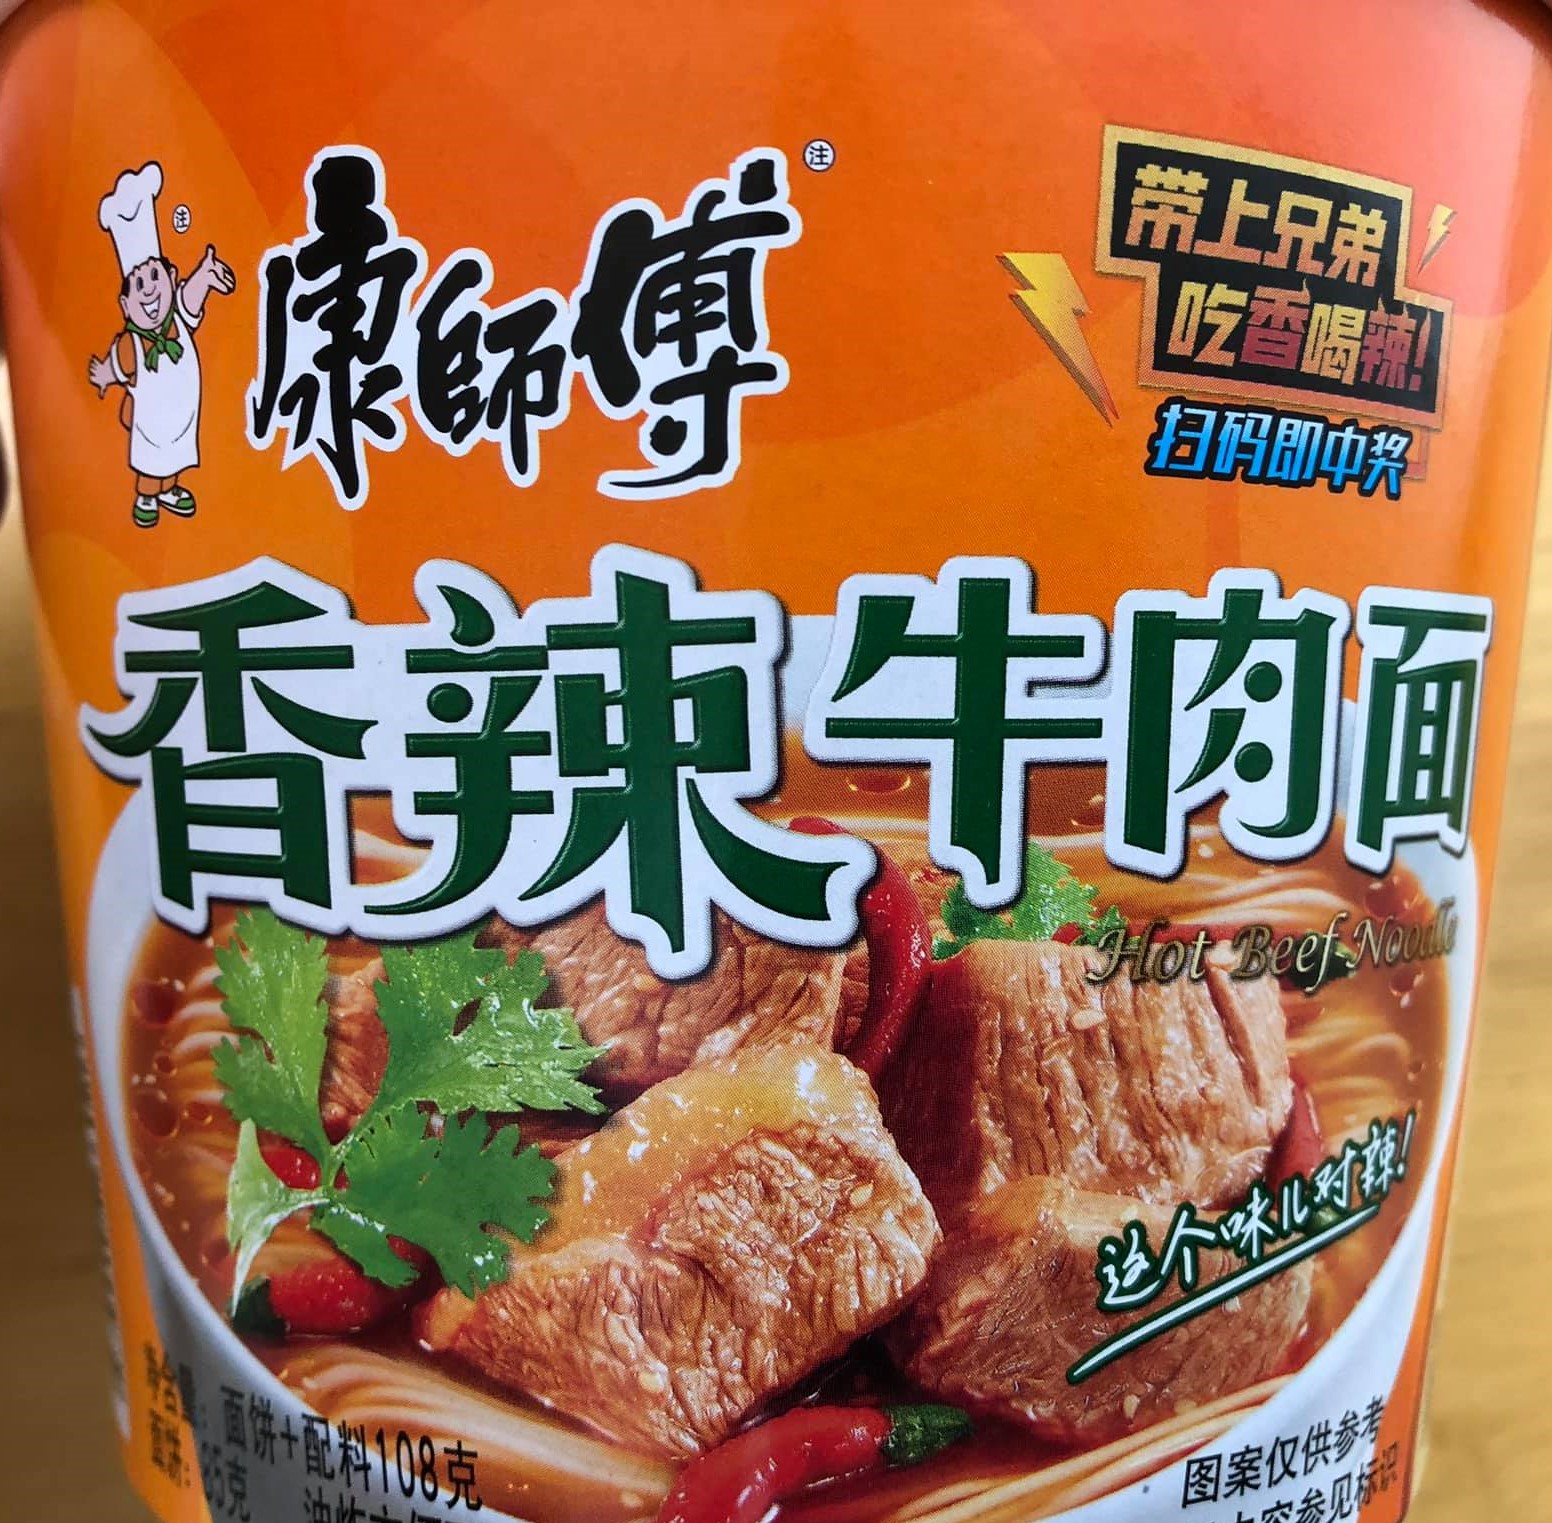 マーシーの美味しい3分中華料理クッキング!商品名は『香辣』!美味しくて辛い！康師傅の香ラー肉麺!